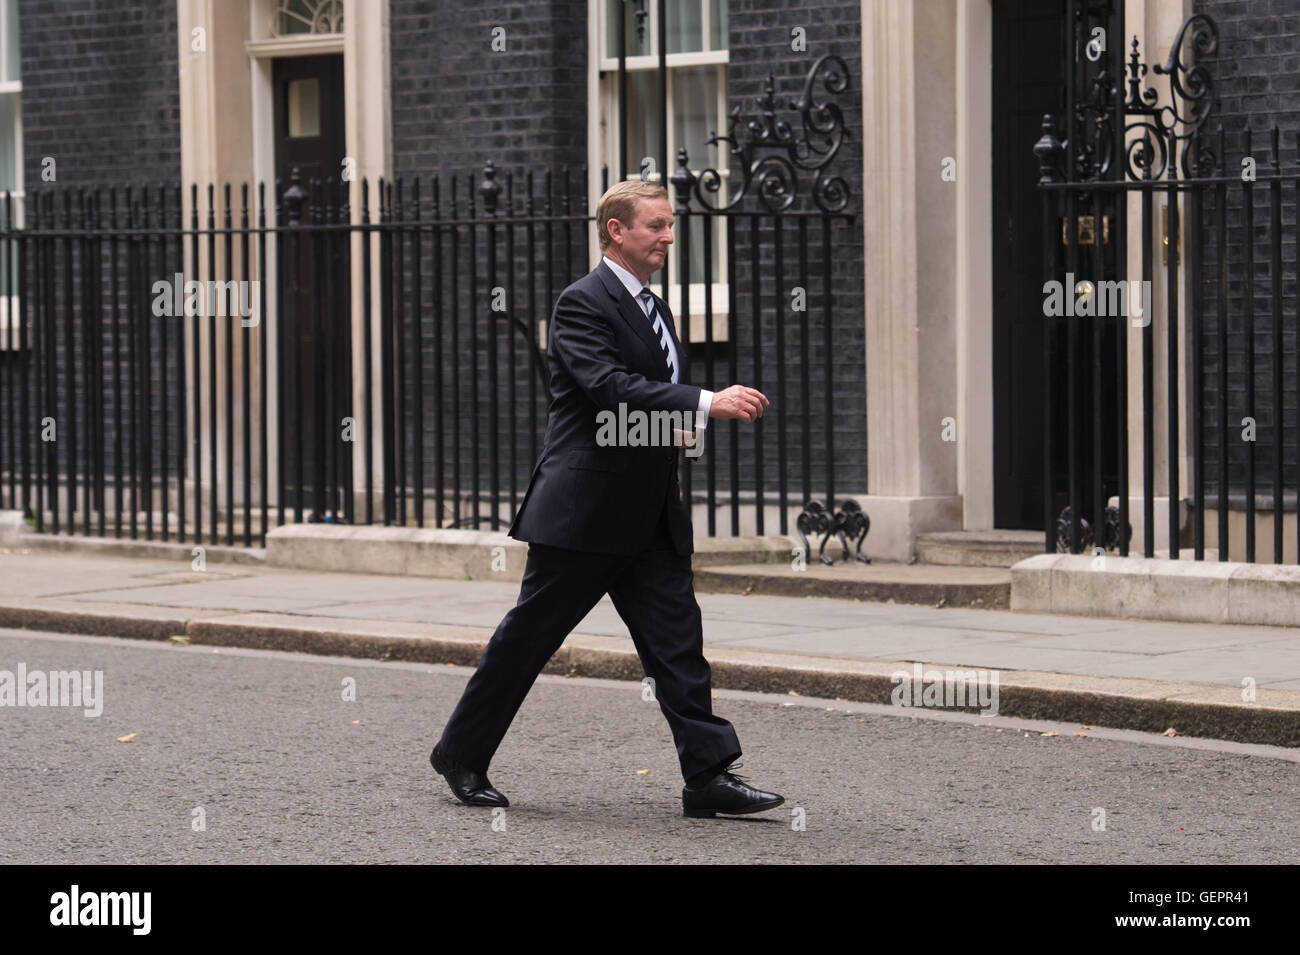 Premier ministre irlandais Enda Kenny laisse 10 Downing Street, Londres, à la suite d'une rencontre avec le Premier ministre sur la façon Brexit Theresa peut se déroulera. Banque D'Images